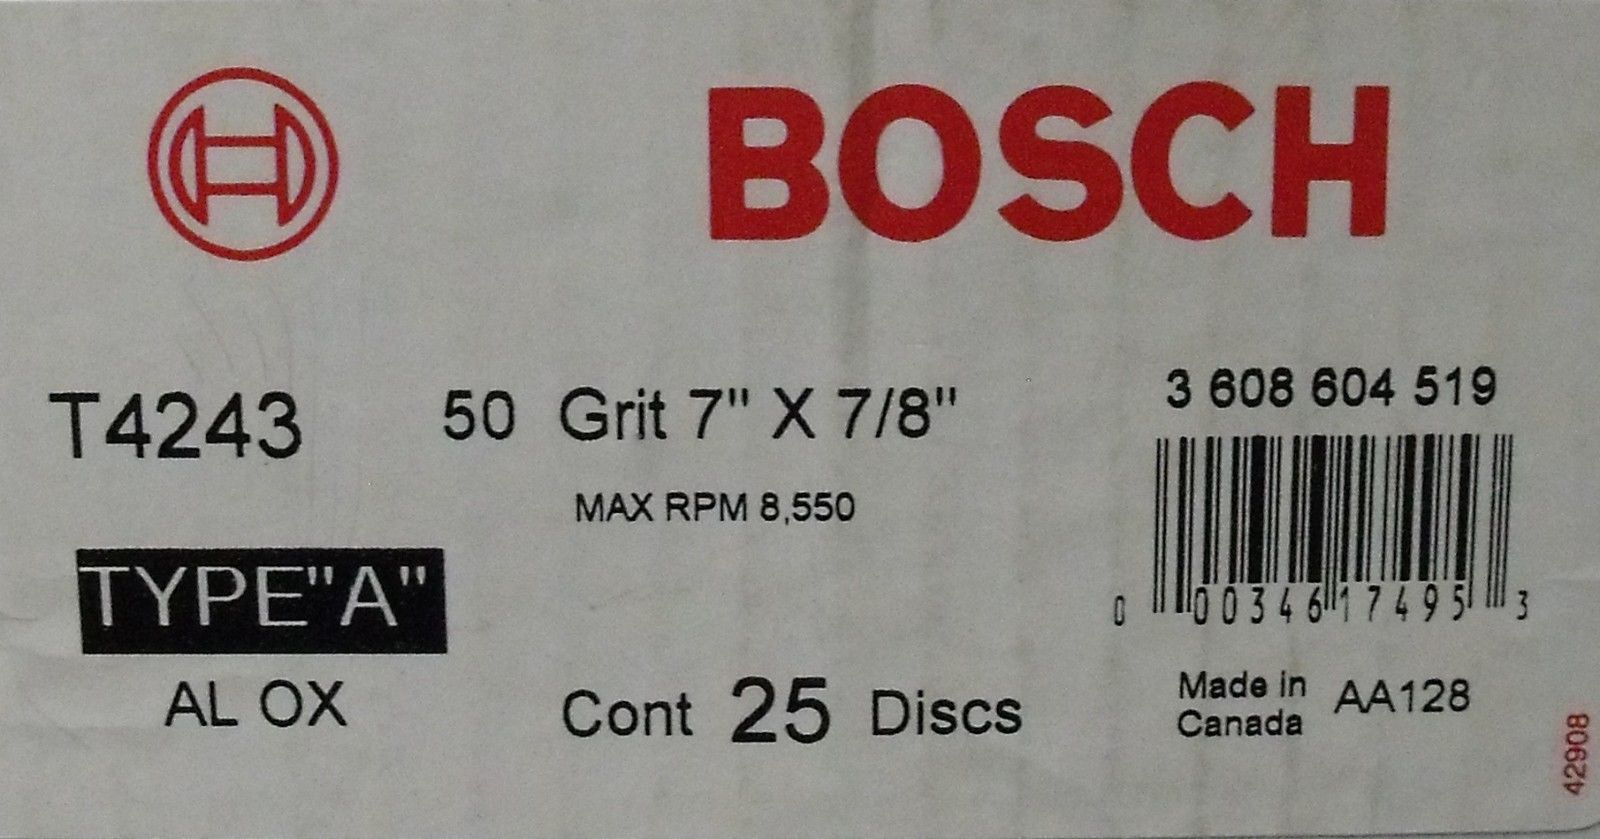 Bosch T4243 7" AO Fiber Resin Sanding Disc 50 Grit 25-pack 7/8" Arbor Canada